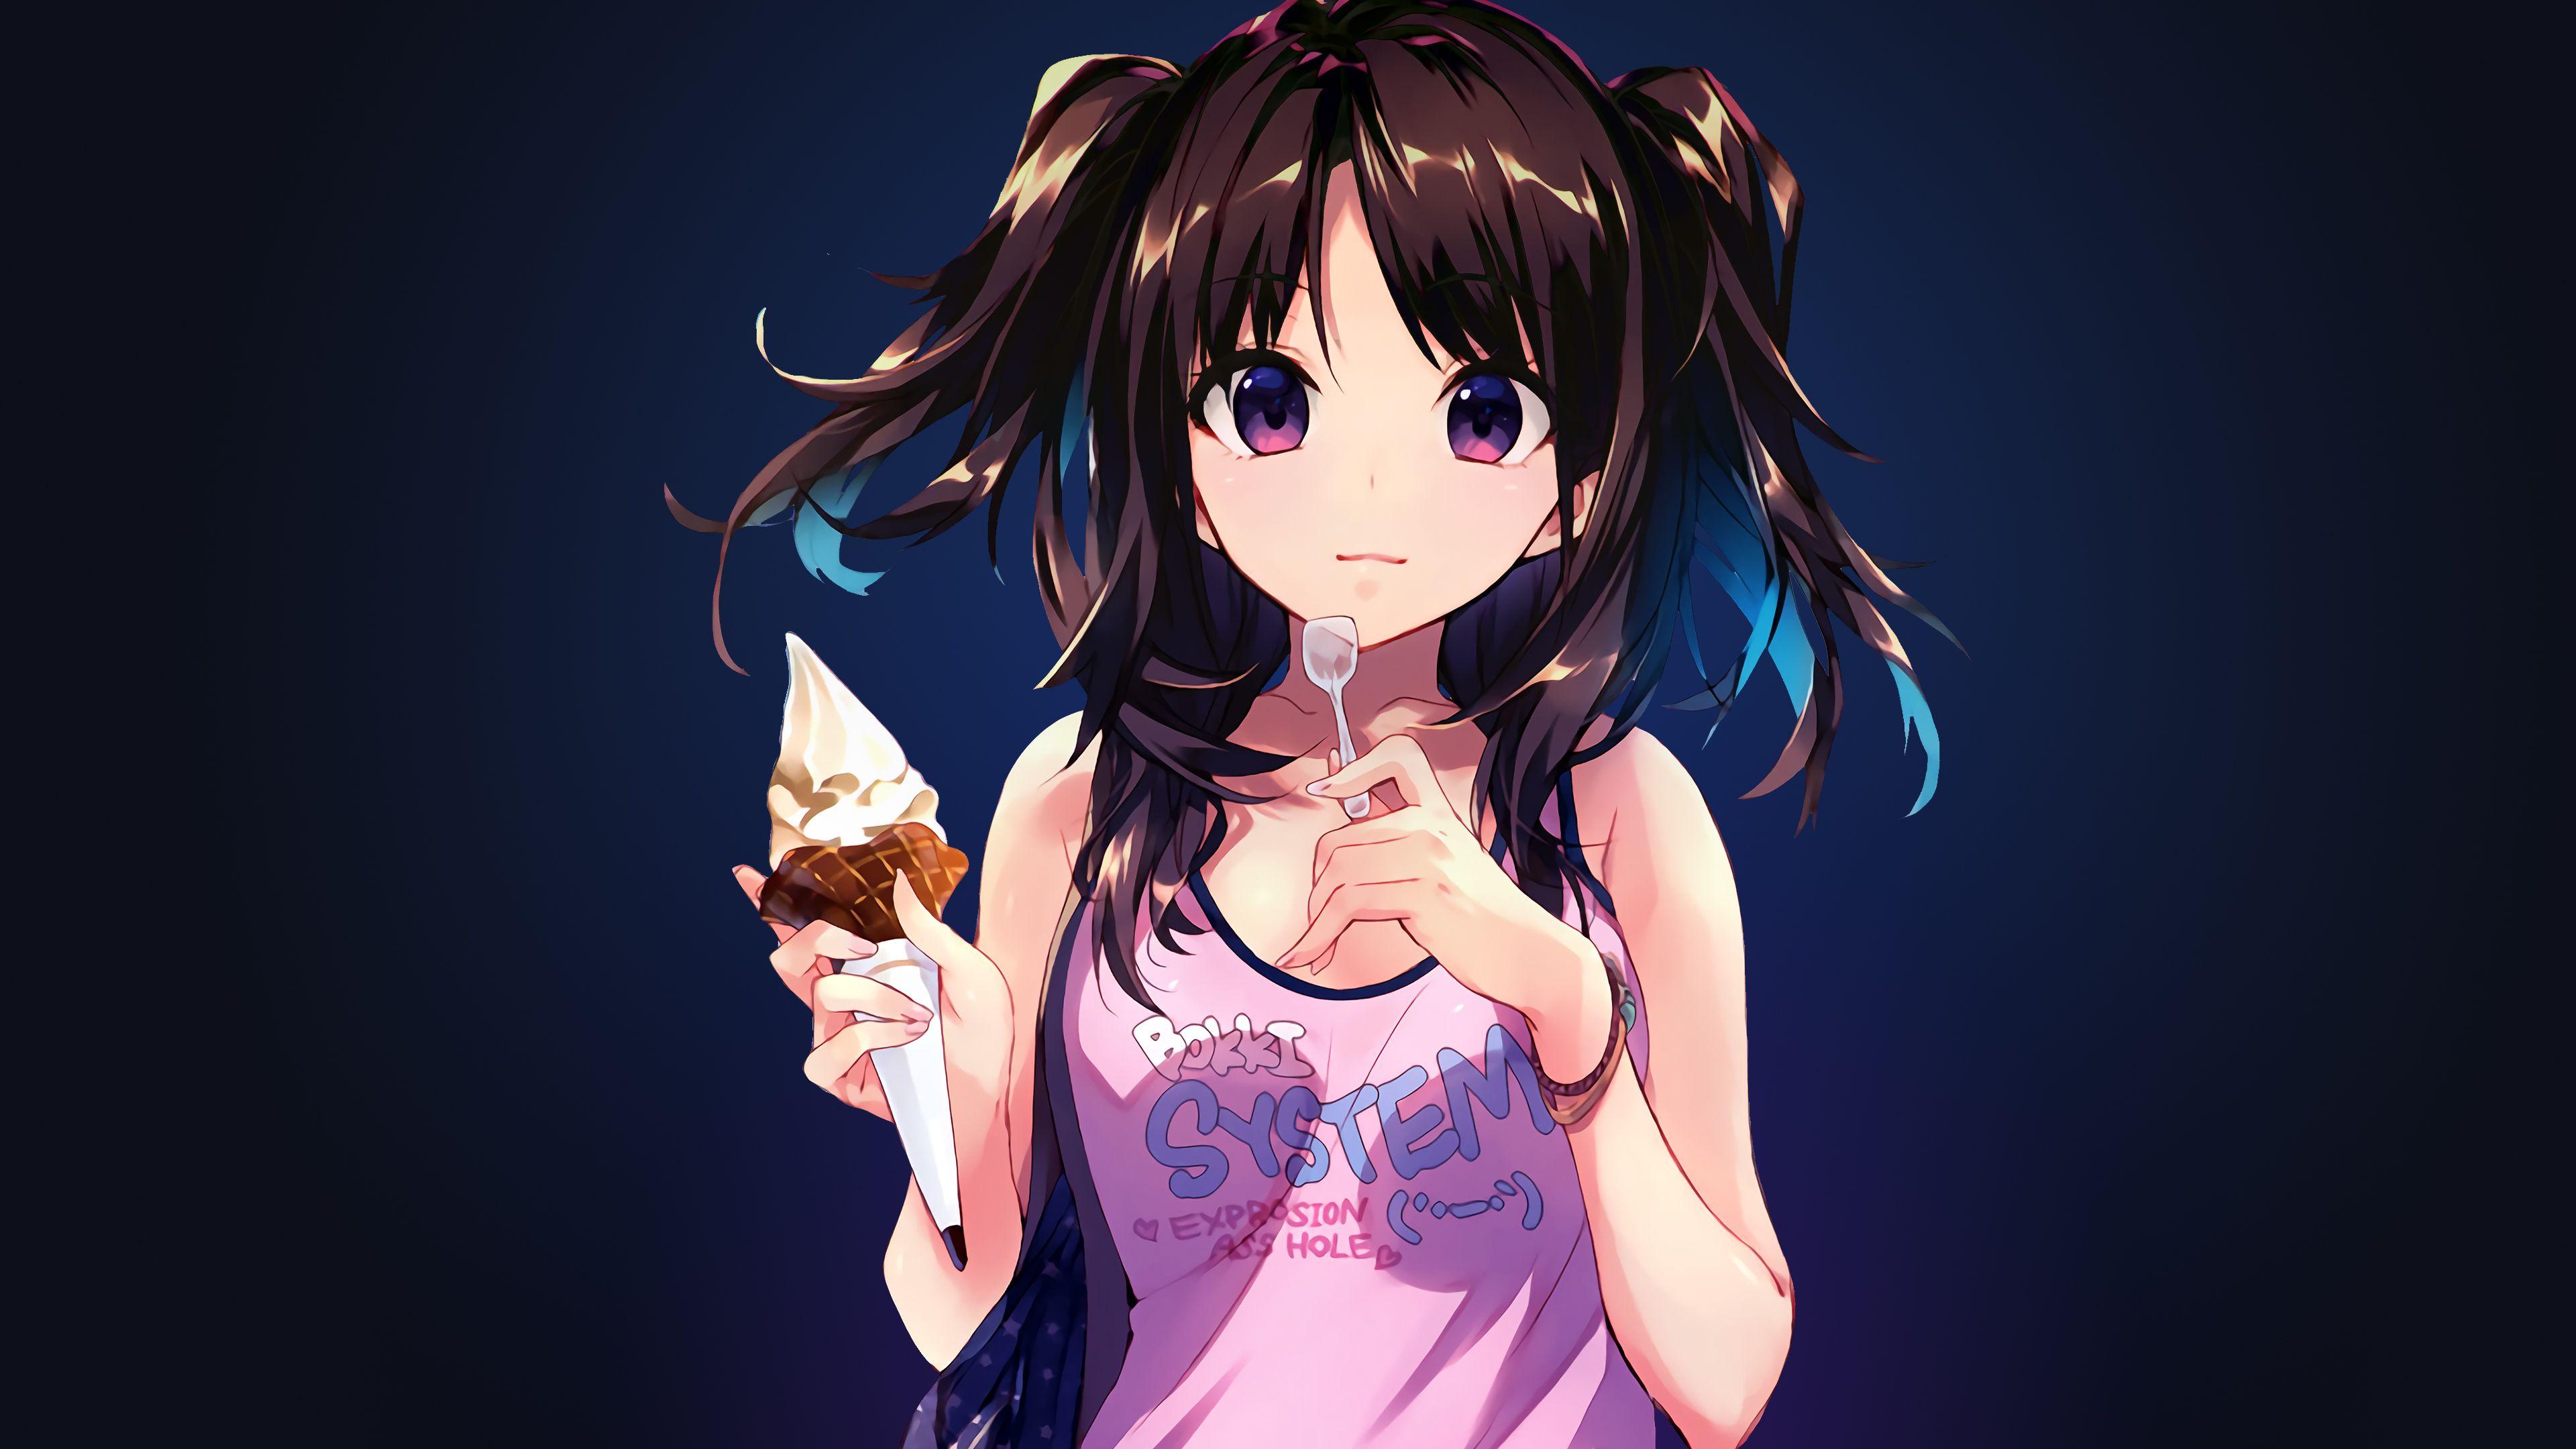 Wallpaper Anime girl, Ice cream, Desert, 4K, Anime,. Wallpaper for iPhone, Android, Mobile and Desktop